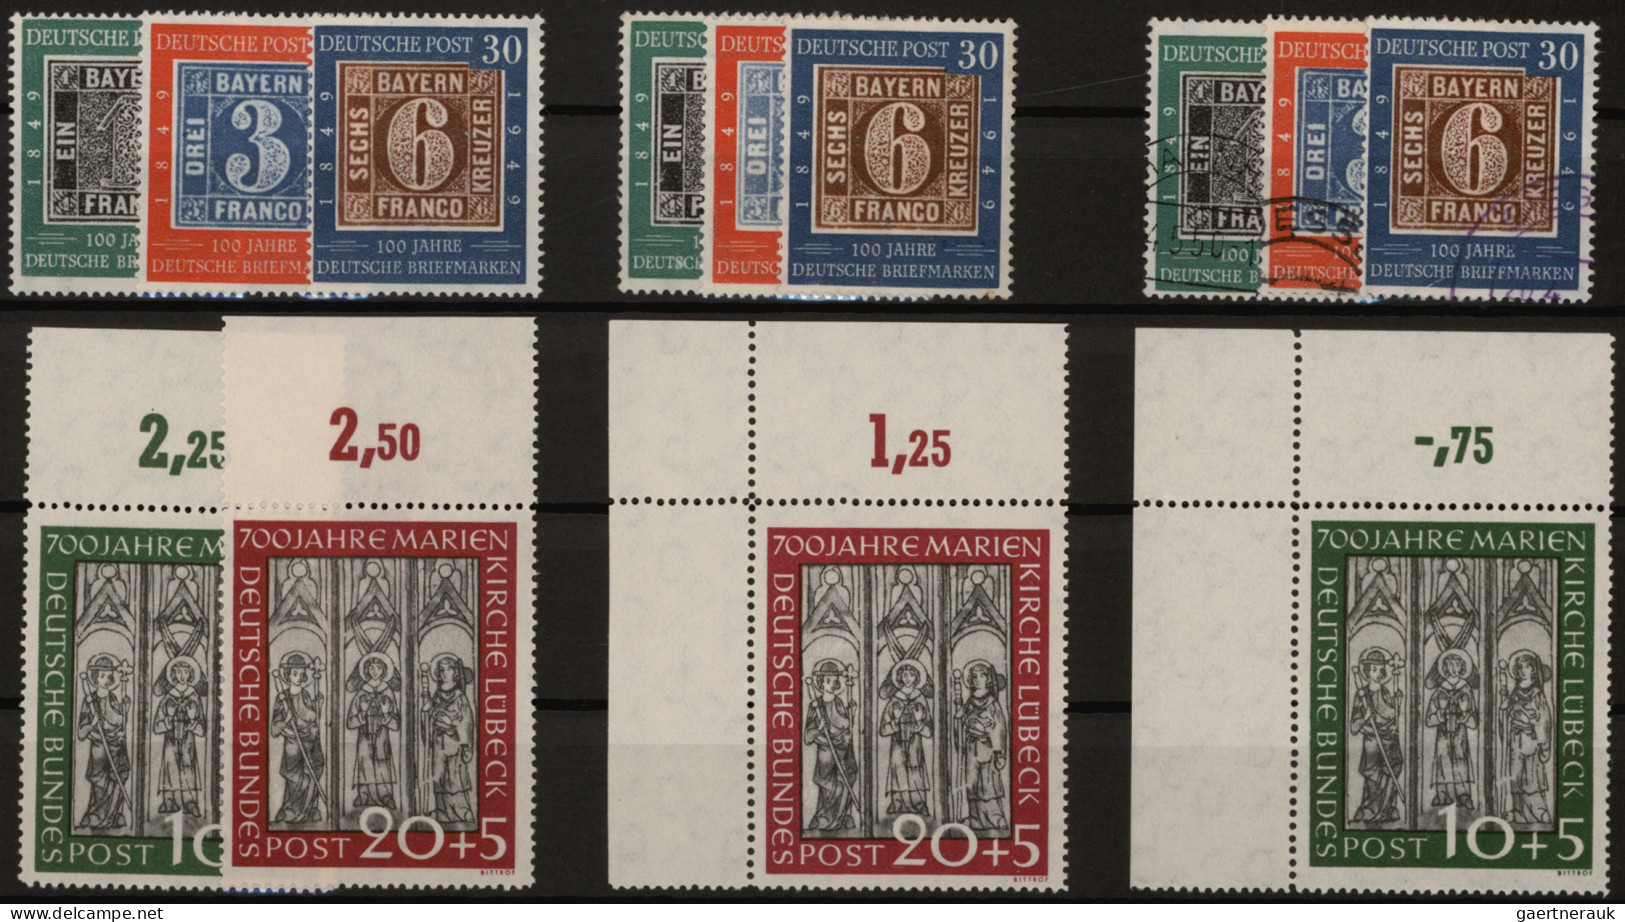 Bundesrepublik Deutschland: 1949/1959, reichhaltige postfrische und gestempelte